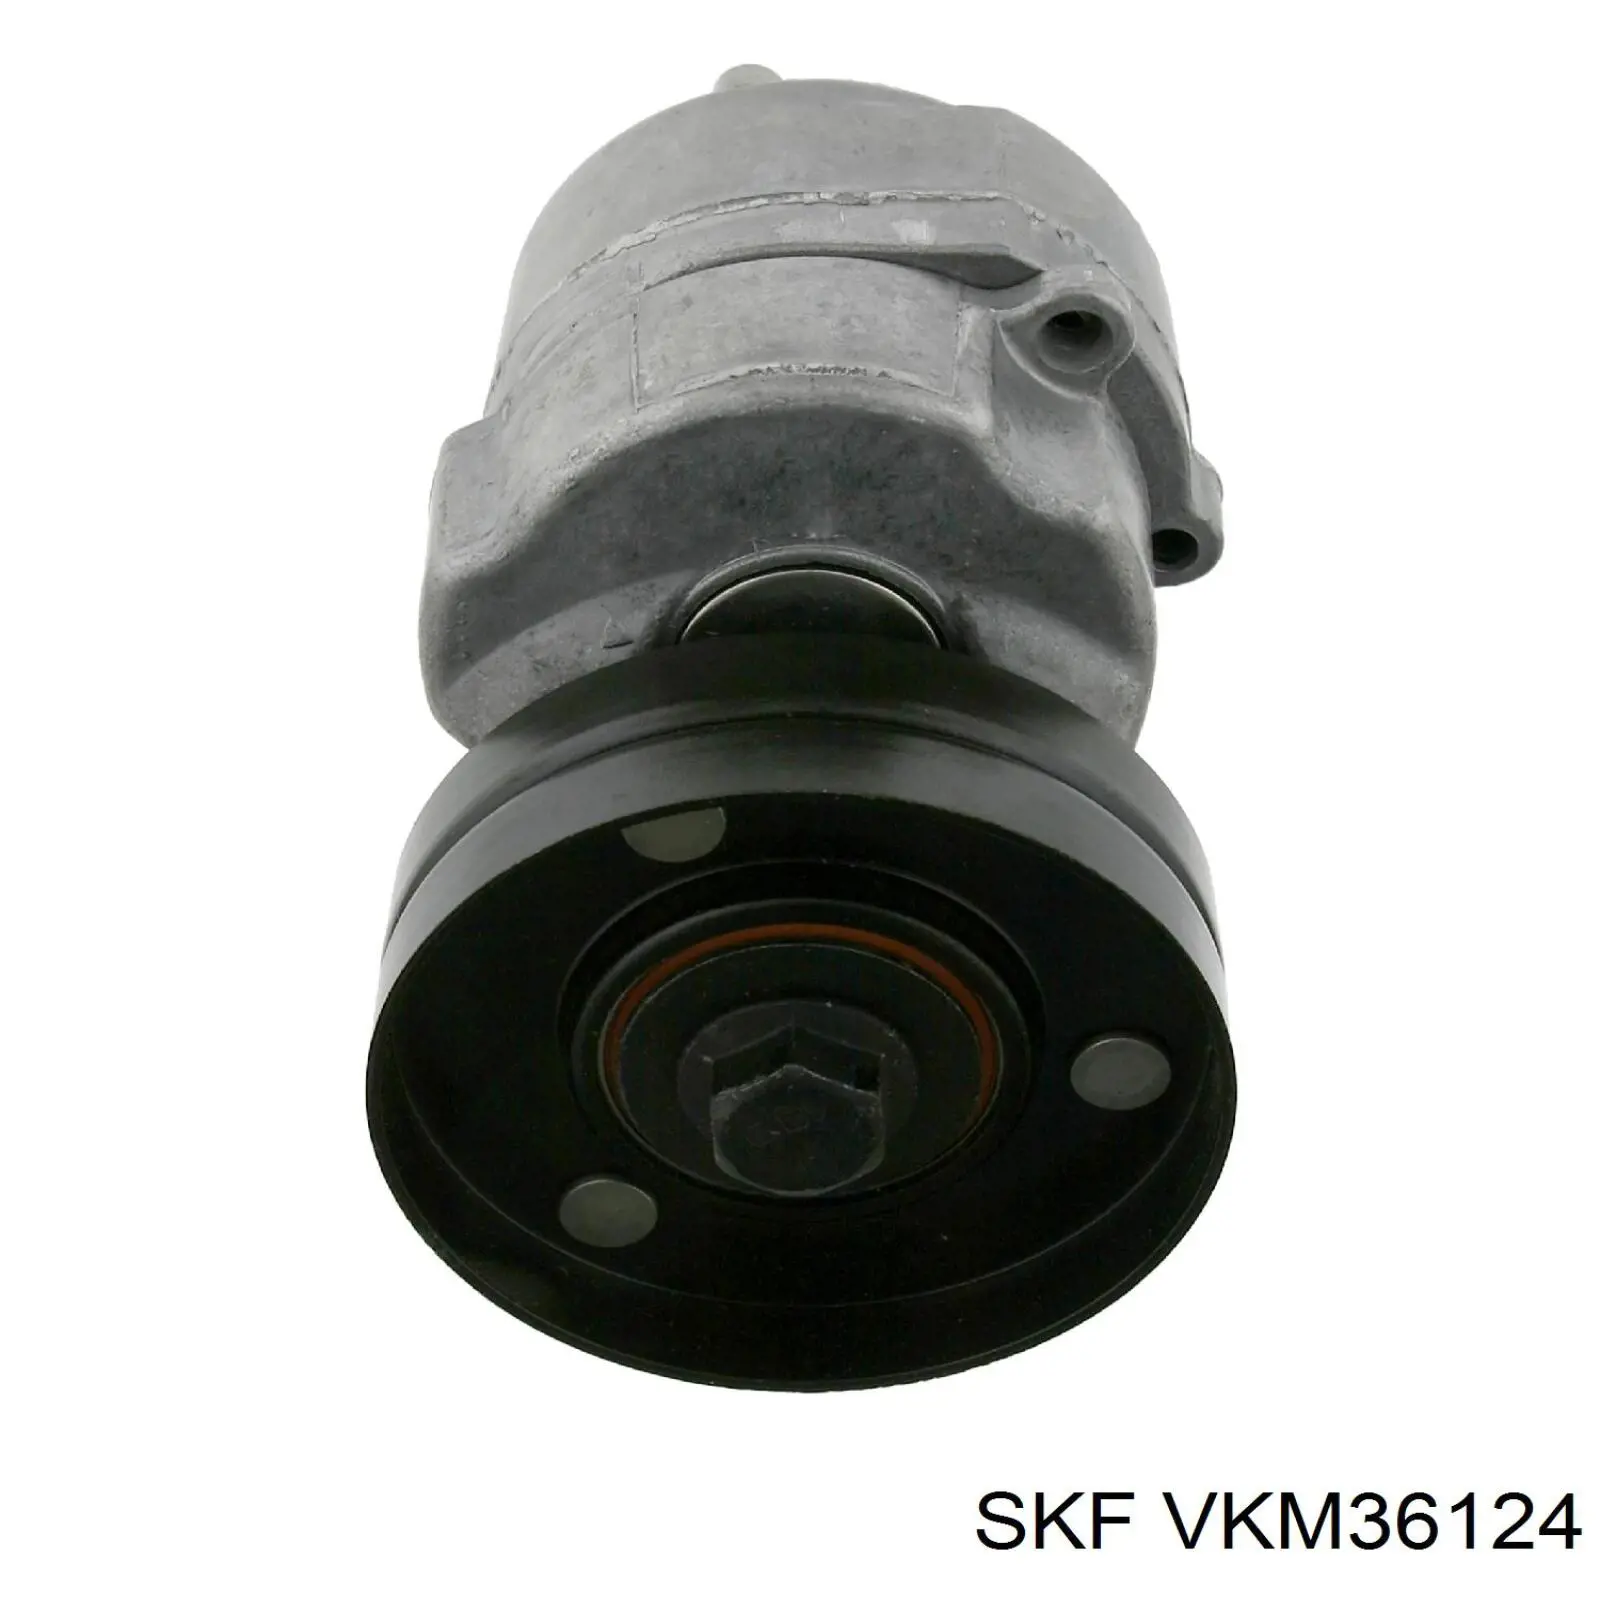 VKM 36124 SKF tensor de correa poli v